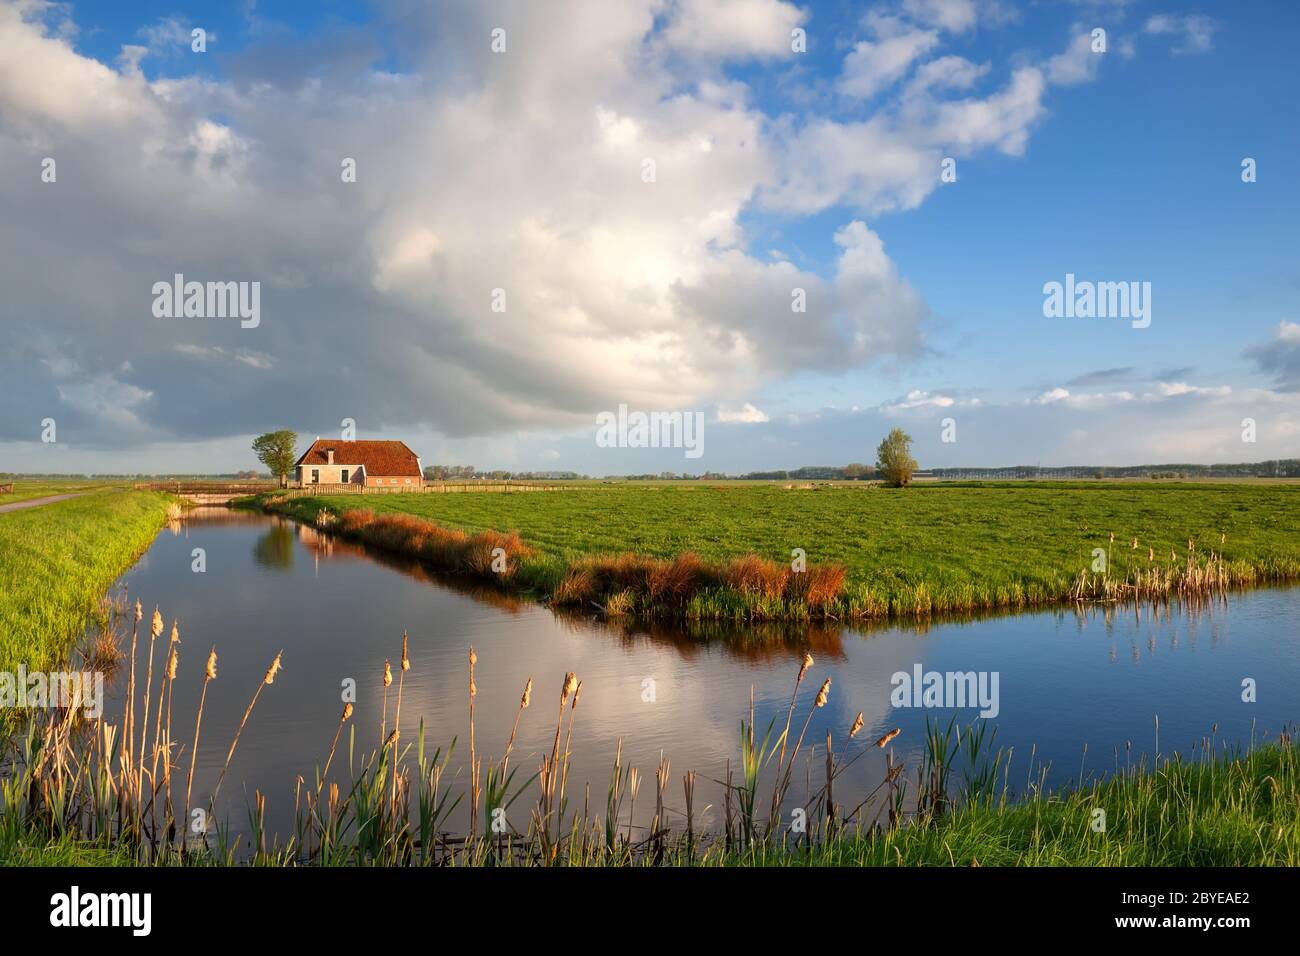 piccola casa, fiume e nuvole bianche soffici Foto Stock